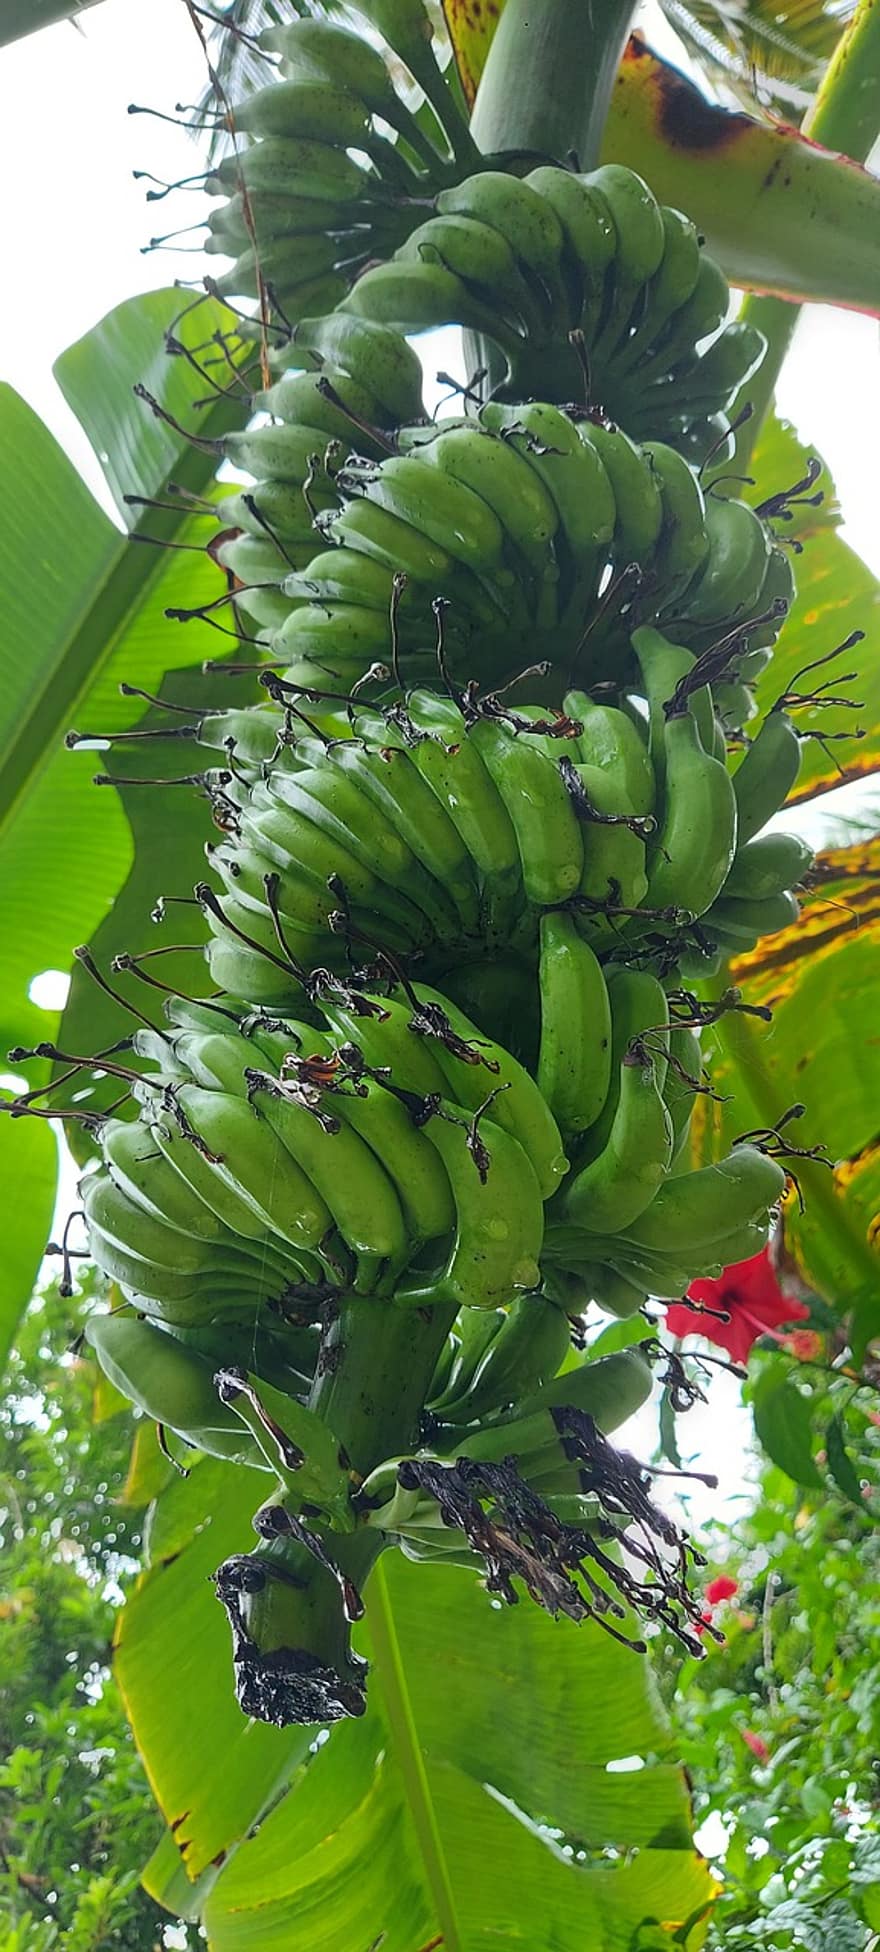 plátano, planta de banano